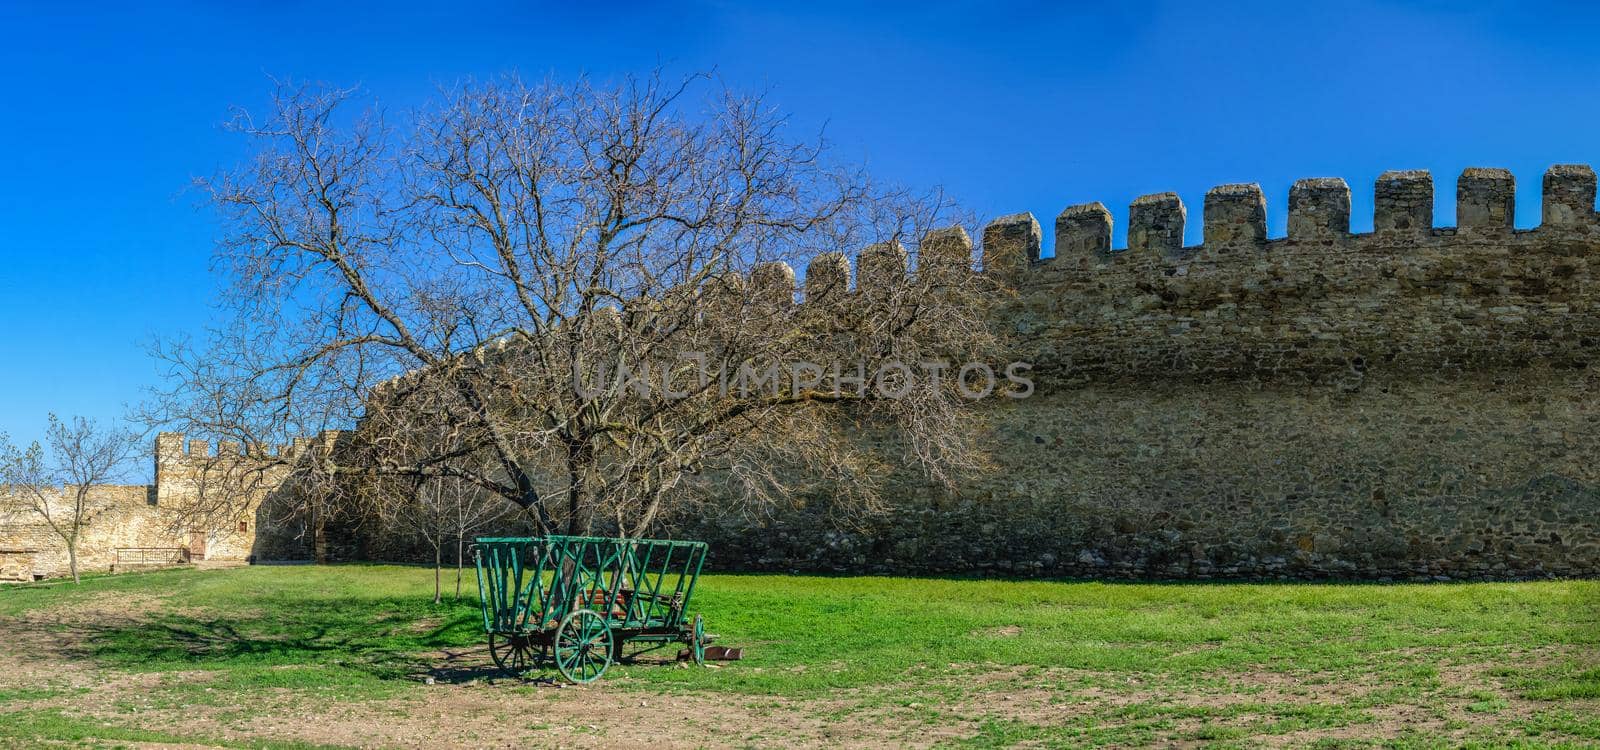 Akkerman fortress in Odessa region, Ukraine by Multipedia